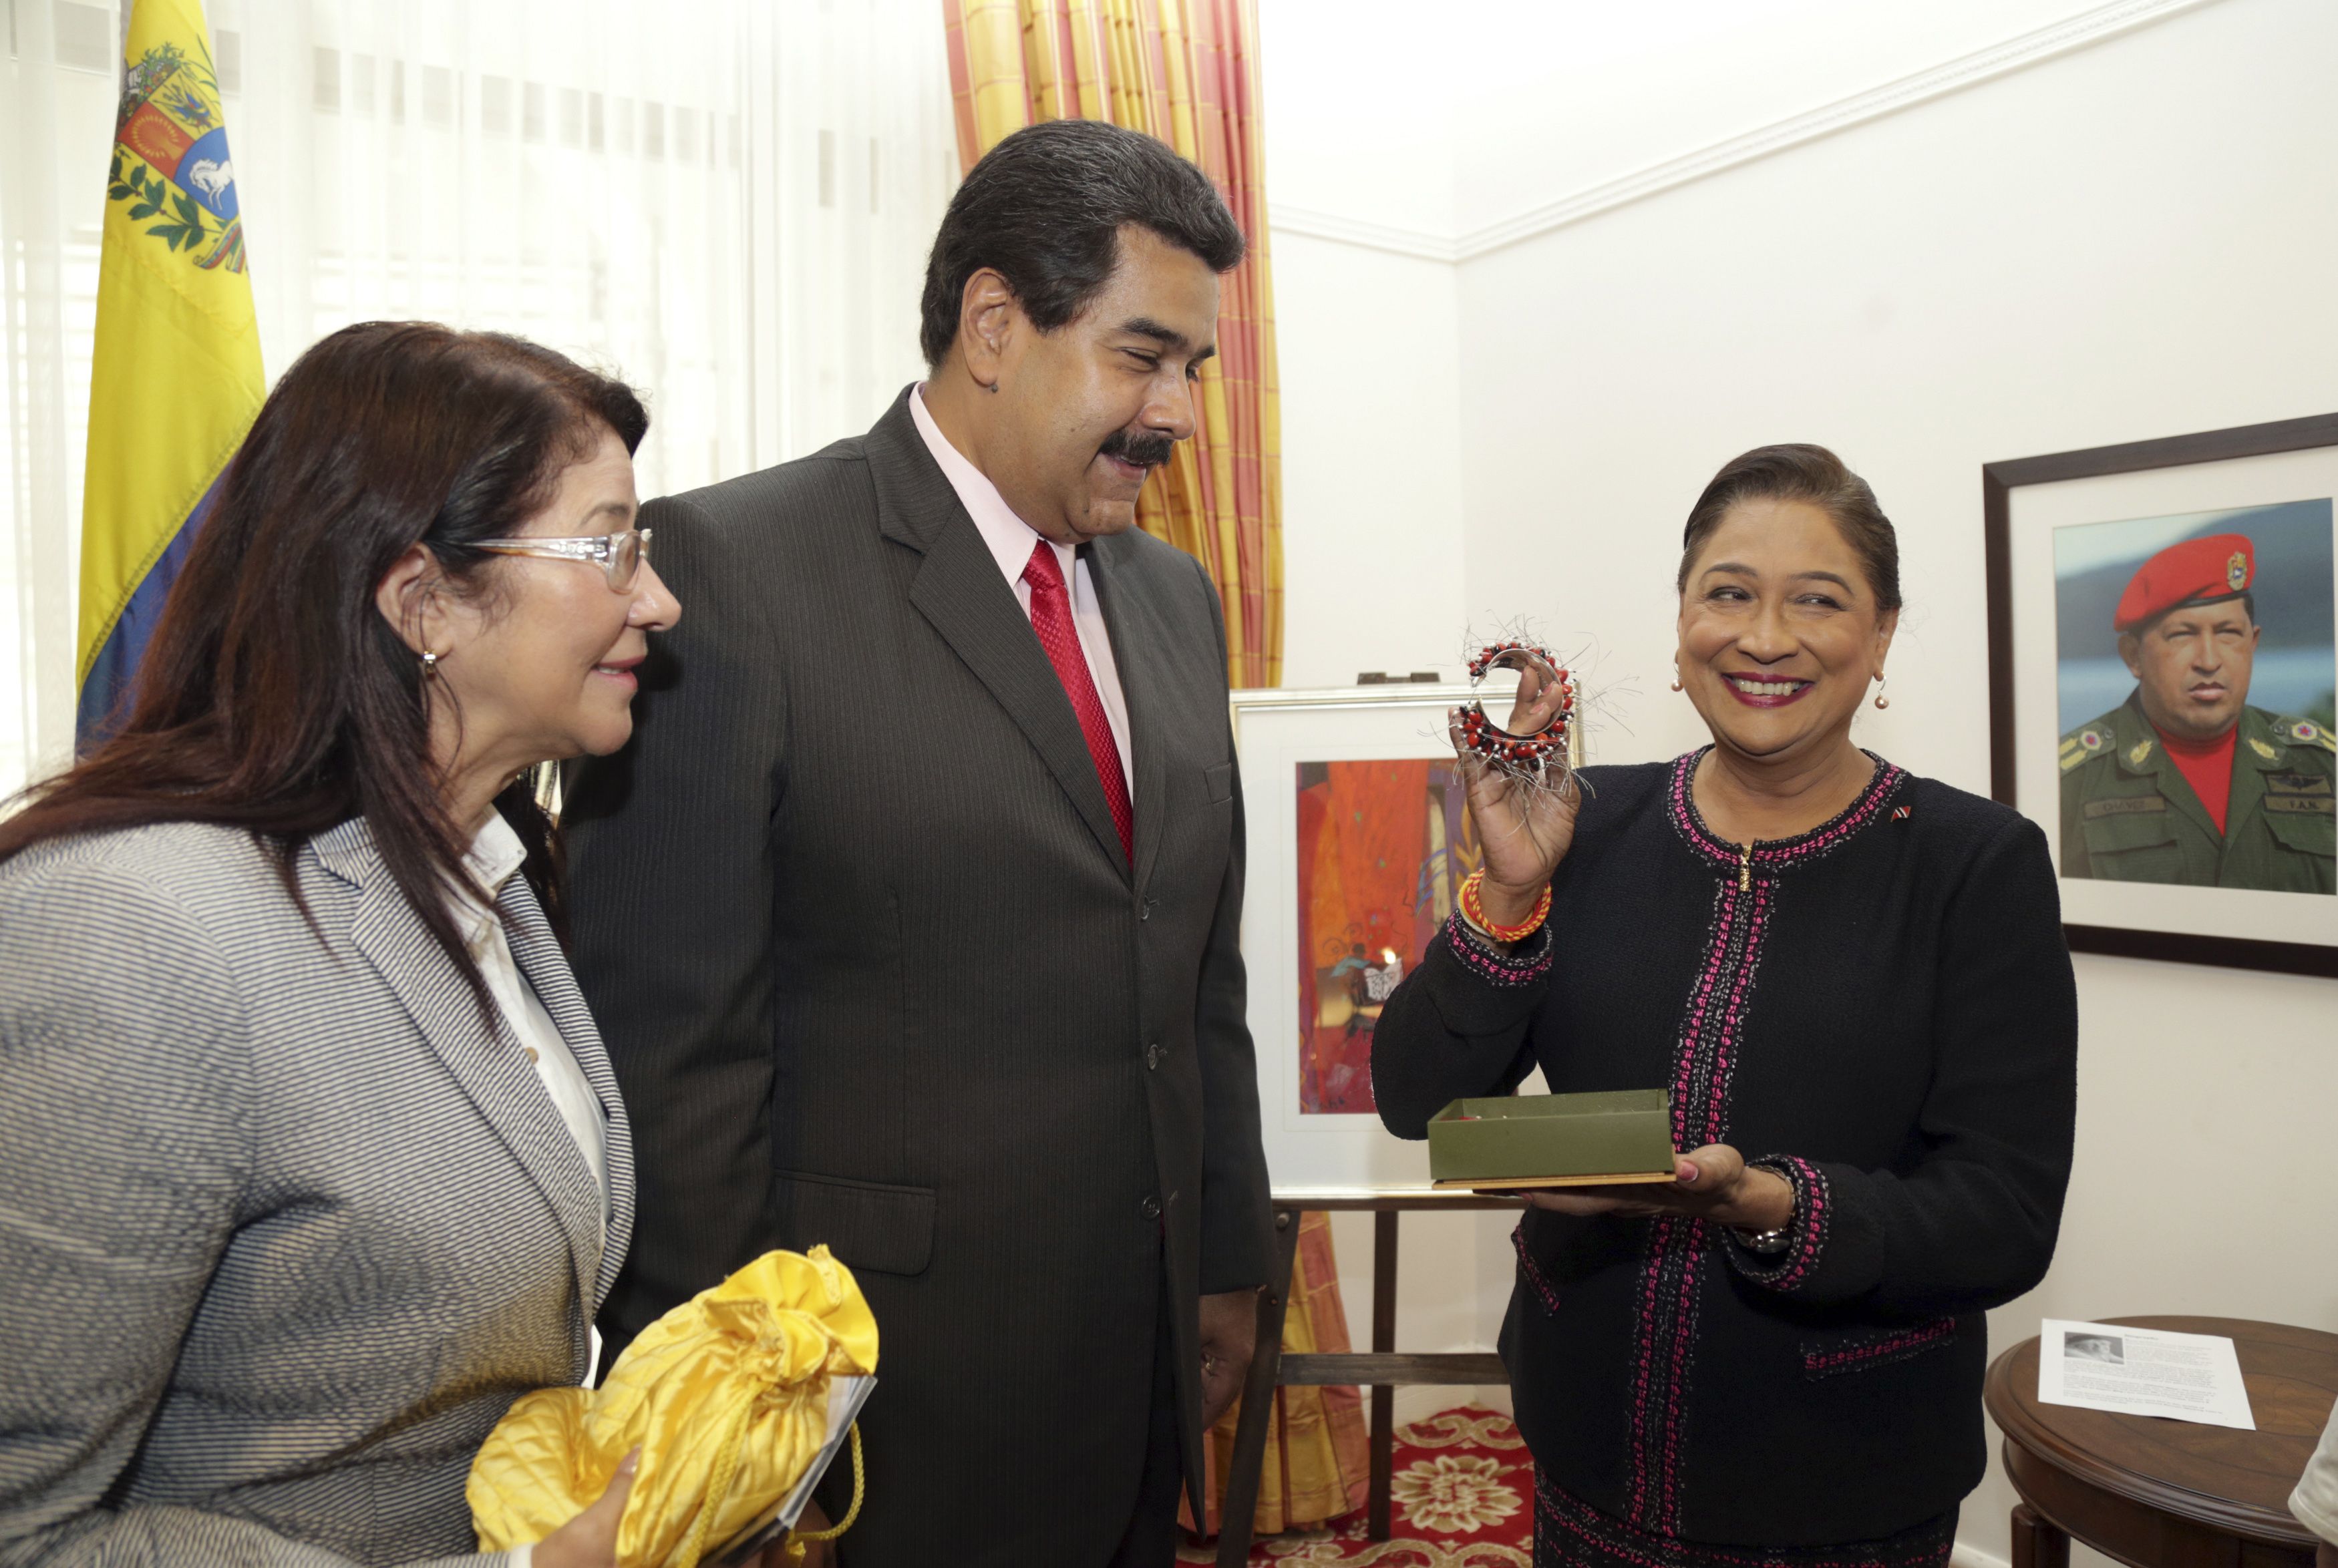 Trinidad enviará a Venezuela gasolina y papel tualé a cambio de crudo